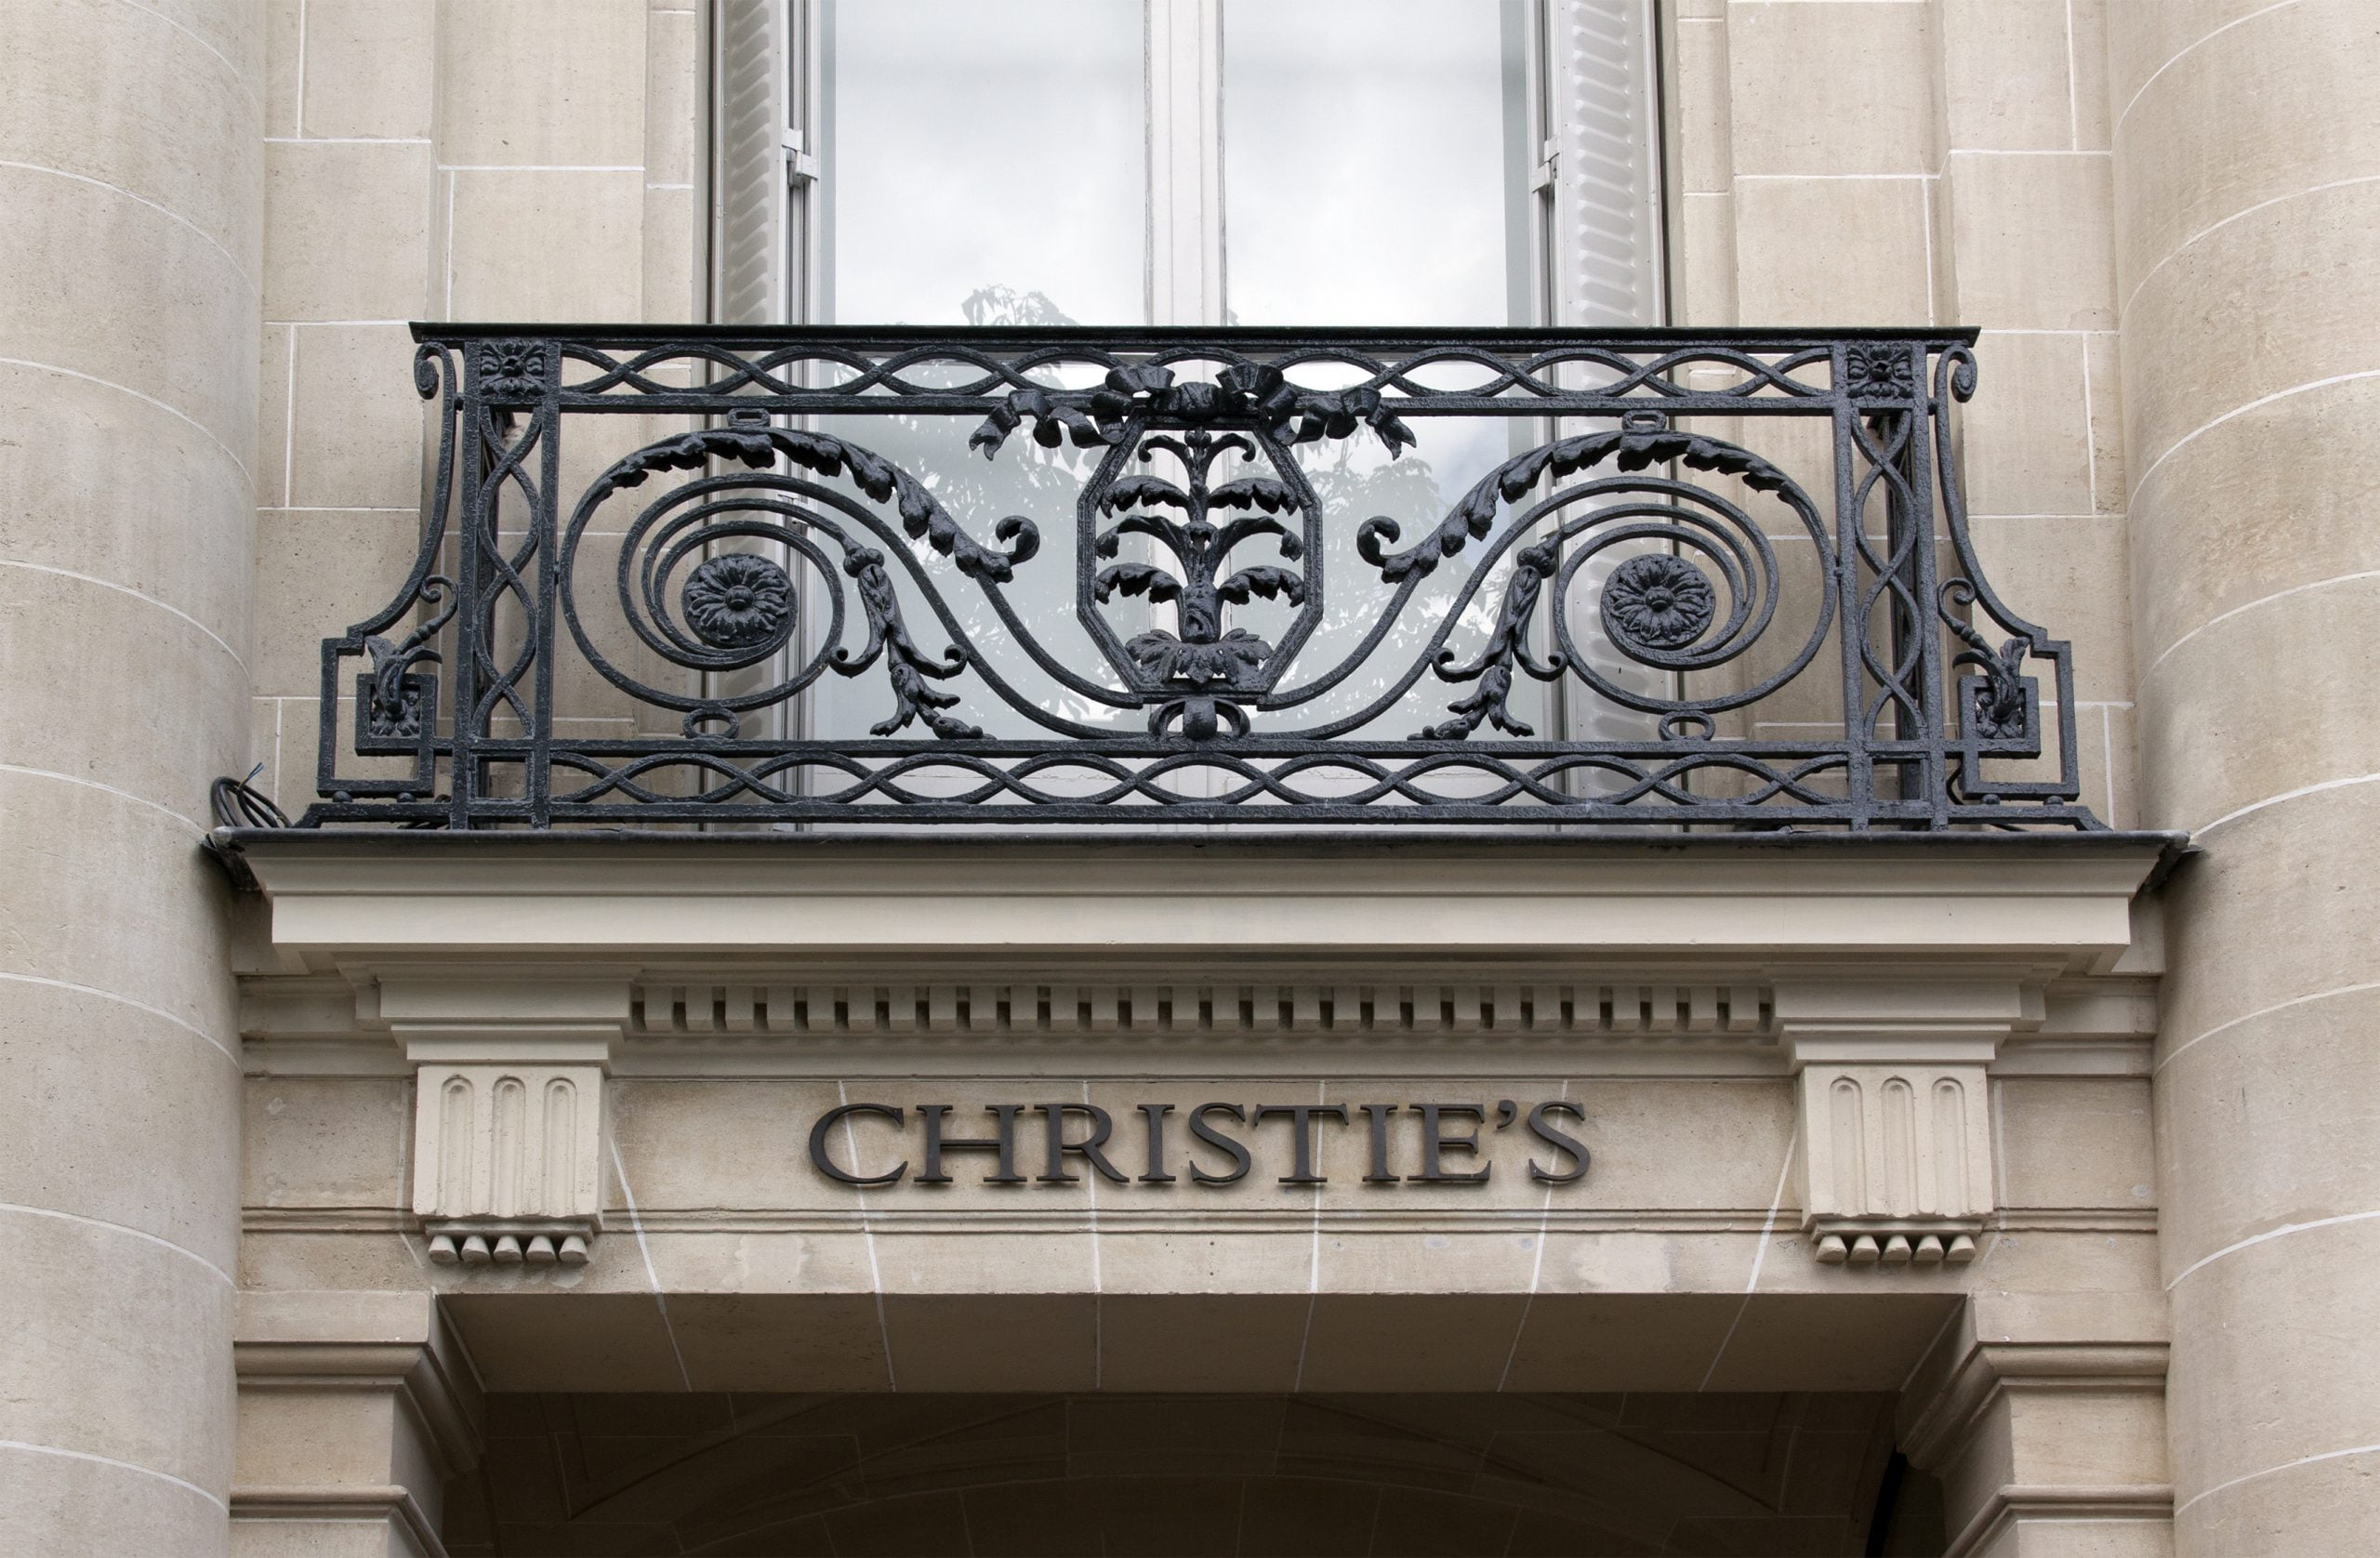 Licitaţiile Christie’s de artă postbelică şi artă contemporană – vânzări totale de peste 5,5 milioane de dolari